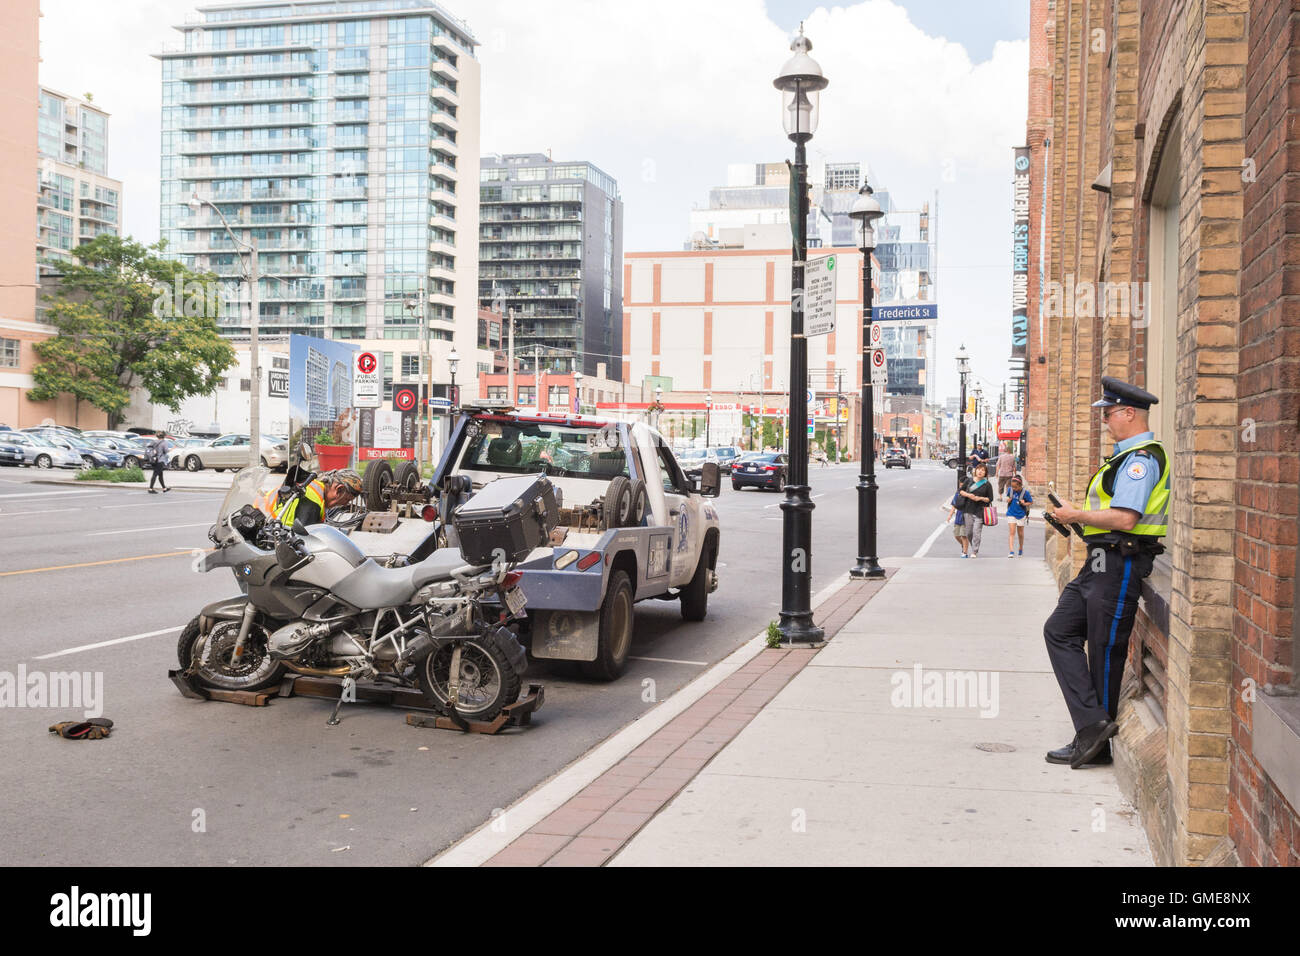 Moto Moto sur dépanneuse pour être remorqué - Front Street, Toronto, Canada Banque D'Images